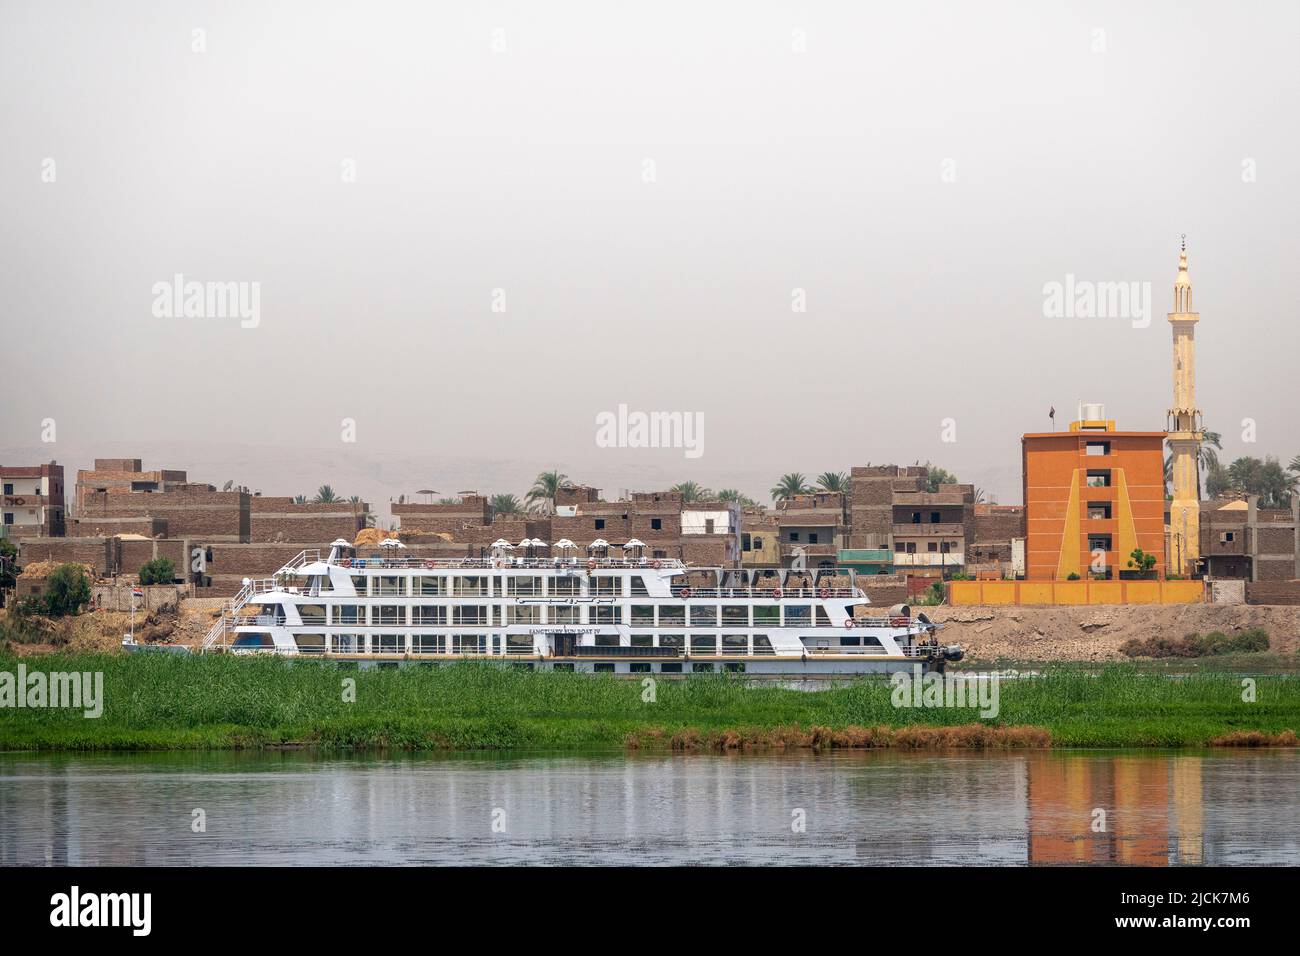 Bateau de croisière sur le Nil naviguant à côté de la caméra derrière une île avec bande d'herbe avec mur des bâtiments derrière et bande de rivière en premier plan Banque D'Images